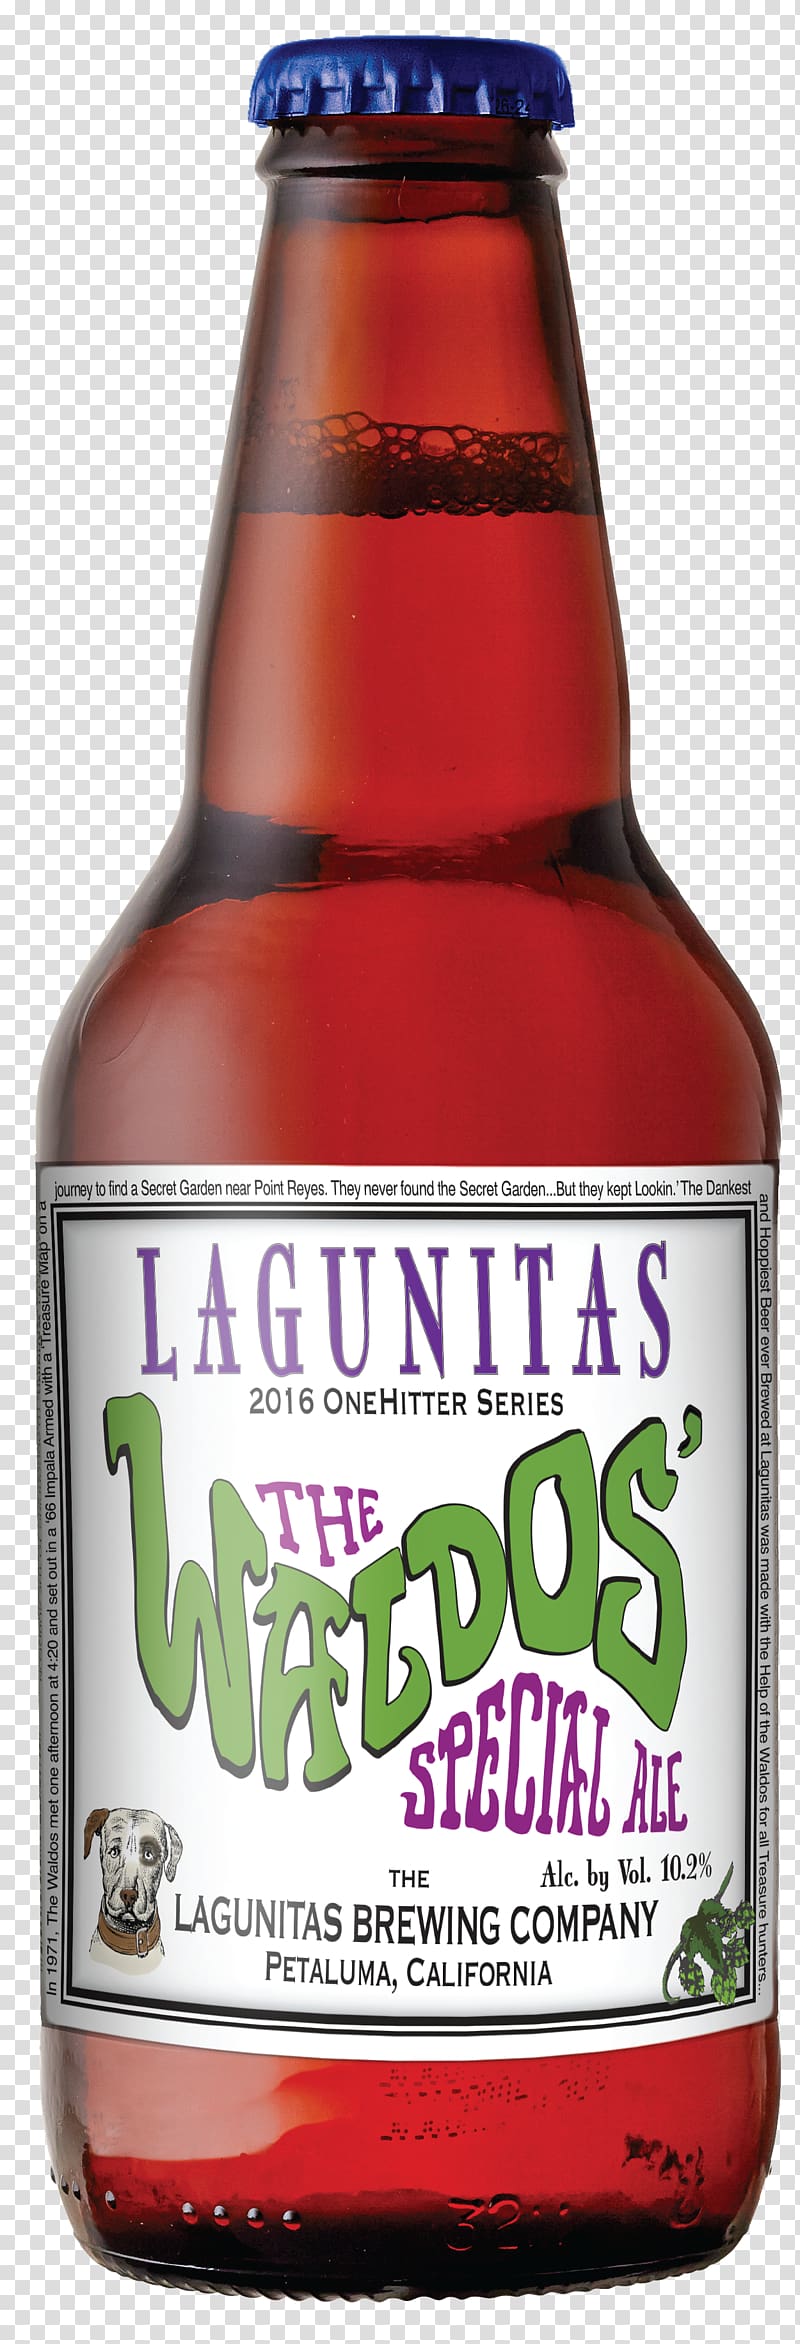 Ale Lagunitas Brewing Company Beer bottle Distilled beverage, beer transparent background PNG clipart